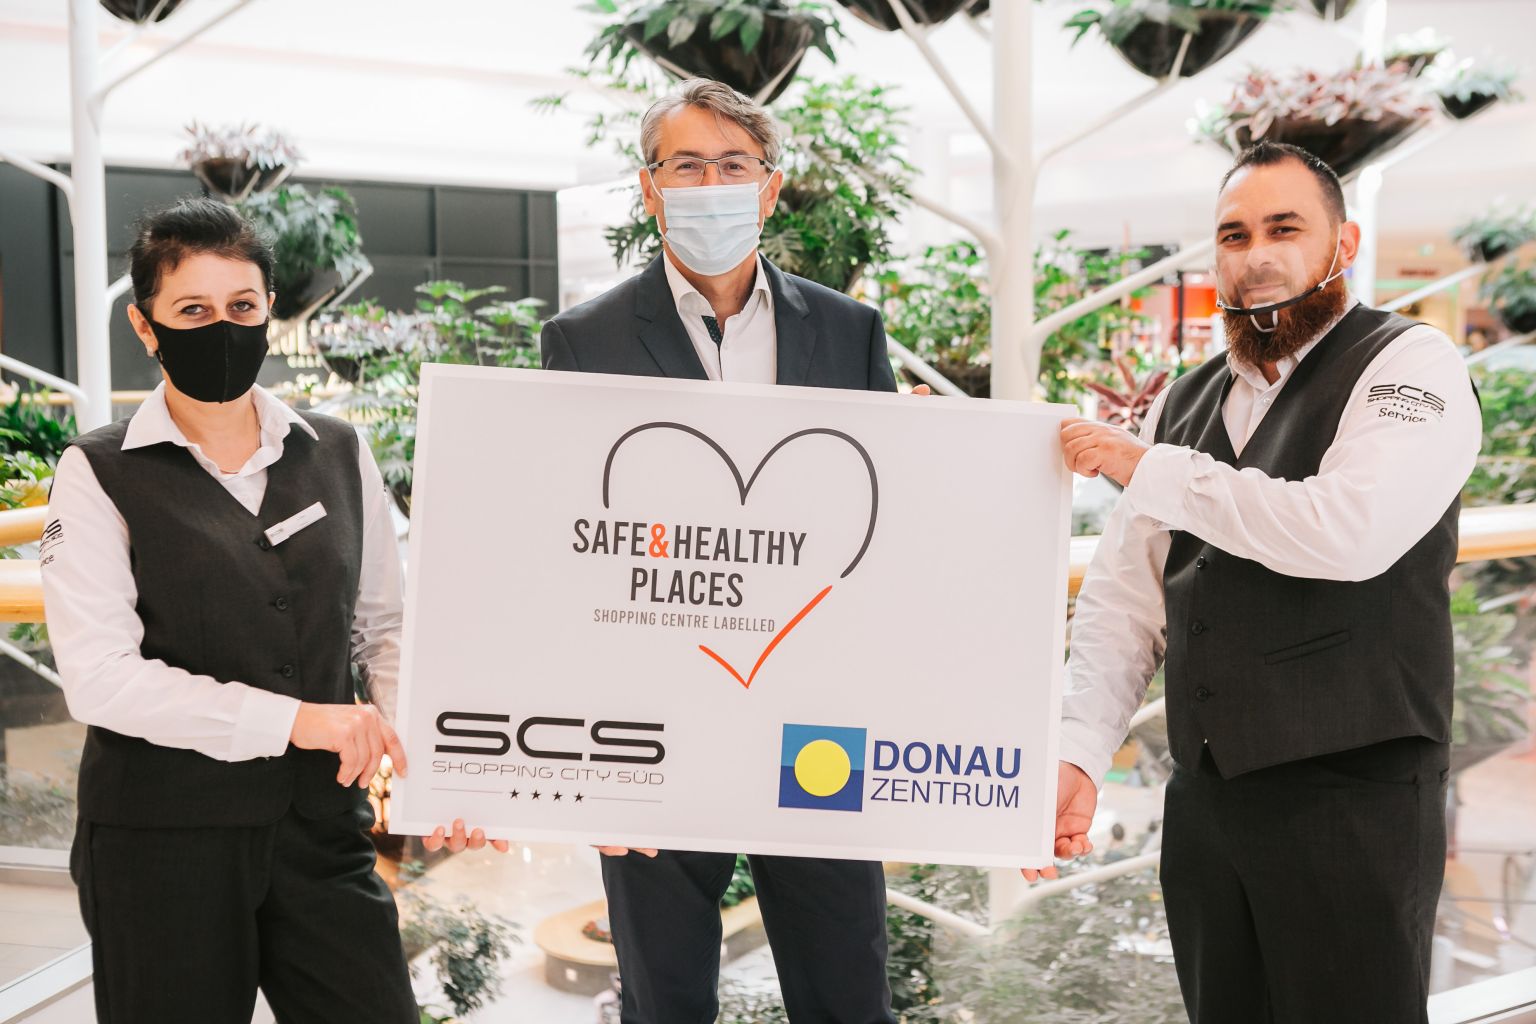 Shopping City Süd und Donau Zentrum mit dem Gütesiegel “Safe & Healthy Places” ausgezeichnet